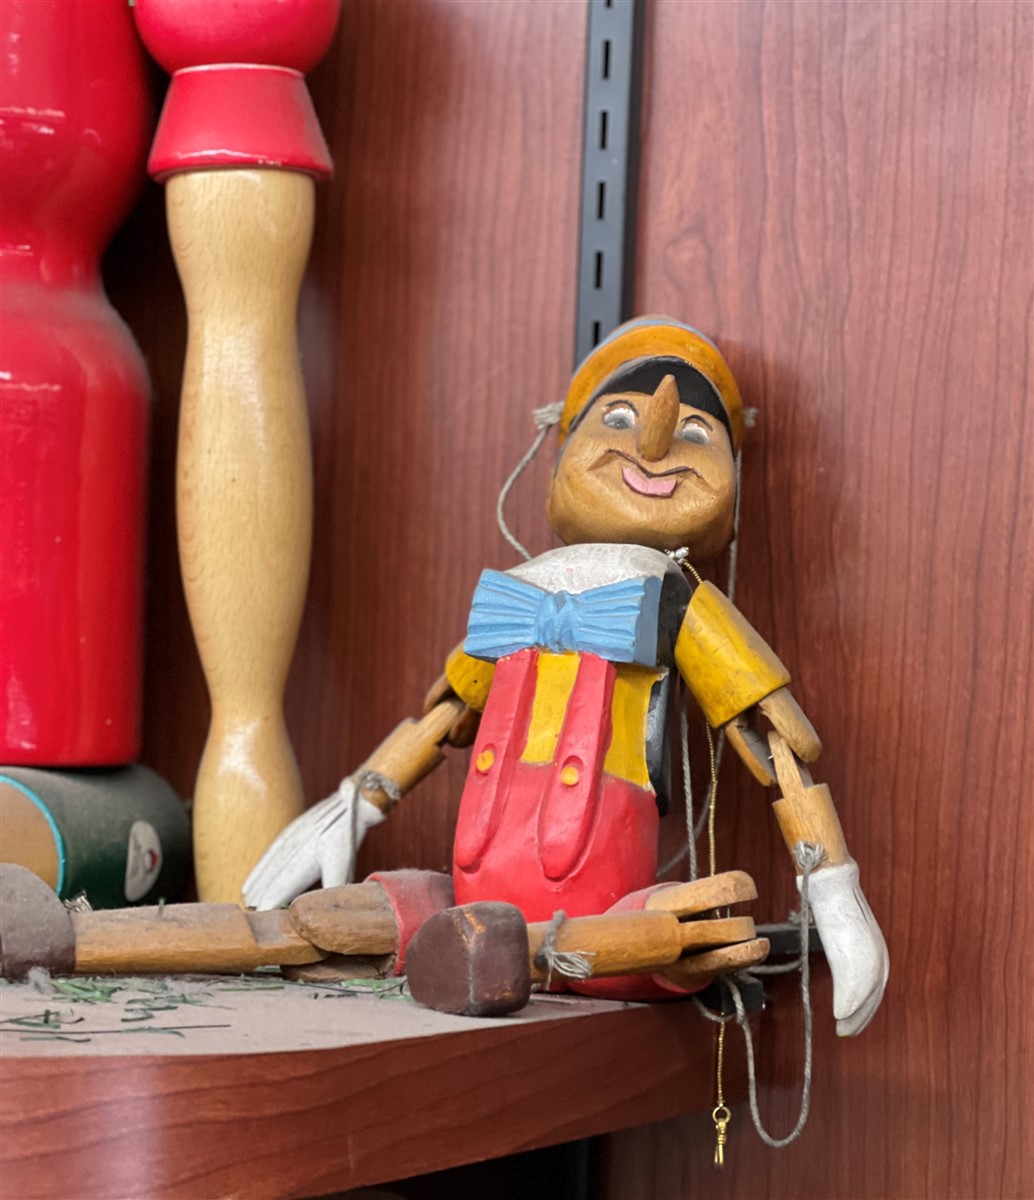 Les sources méconnues : plongée dans les racines de l’histoire de Pinocchio